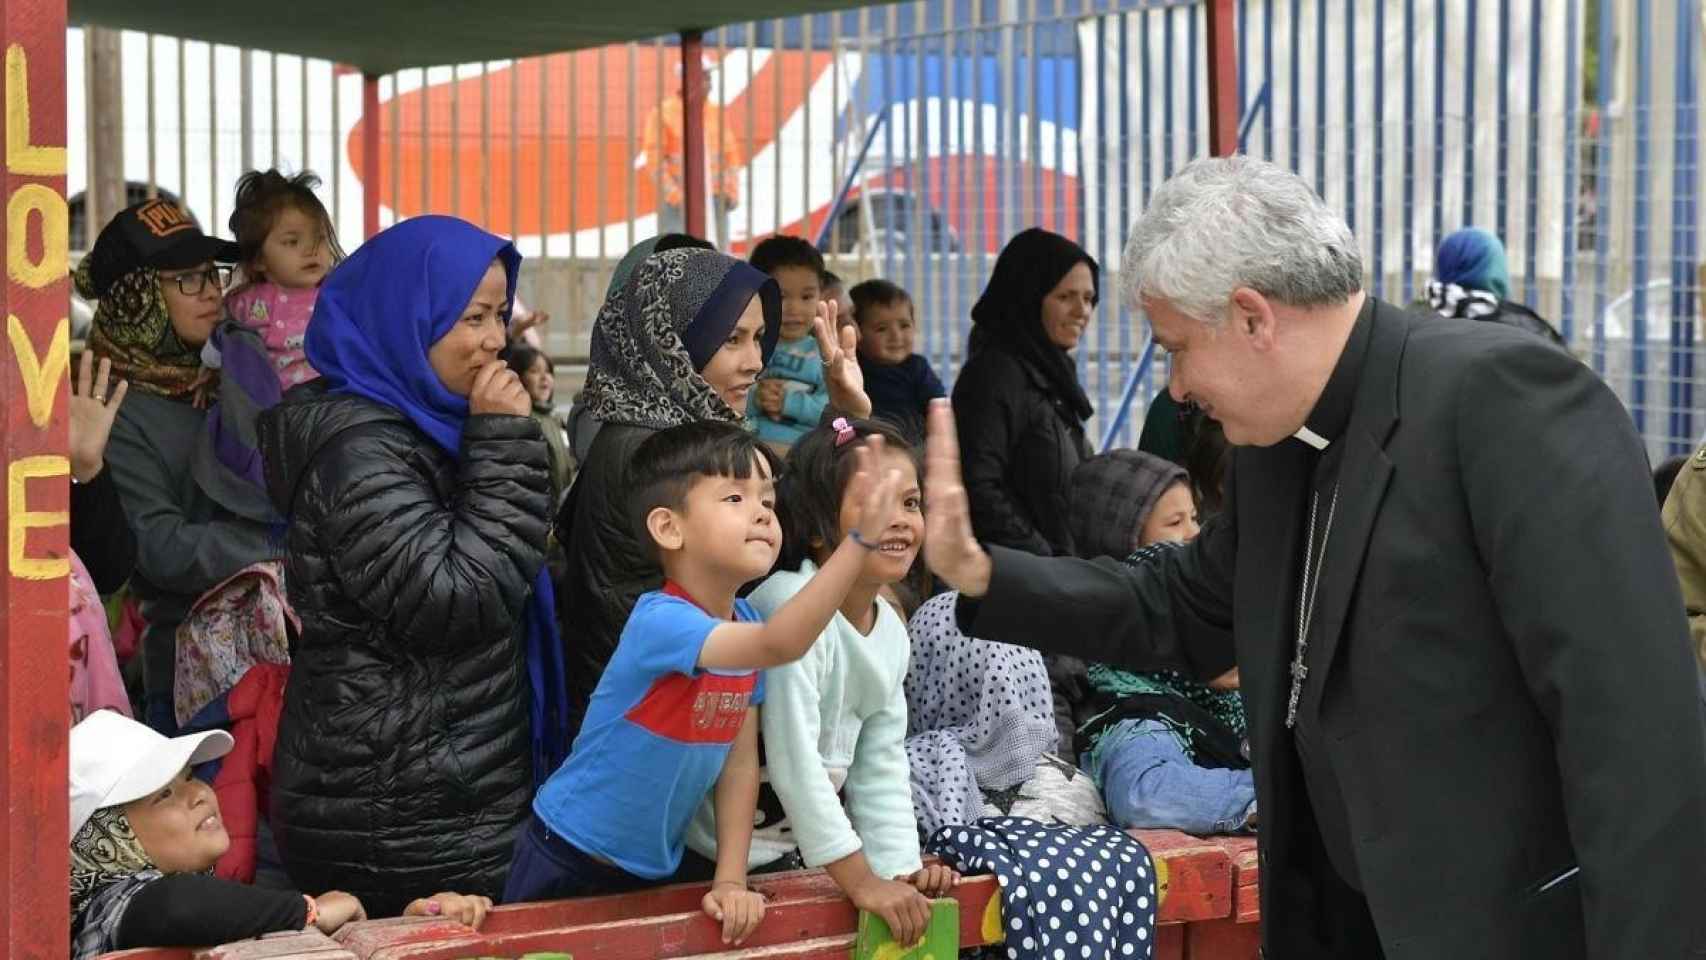 El limosnero del Papa, Konrad Krajewski, saluda a un niño en un campamento de refugiados en Grecia.